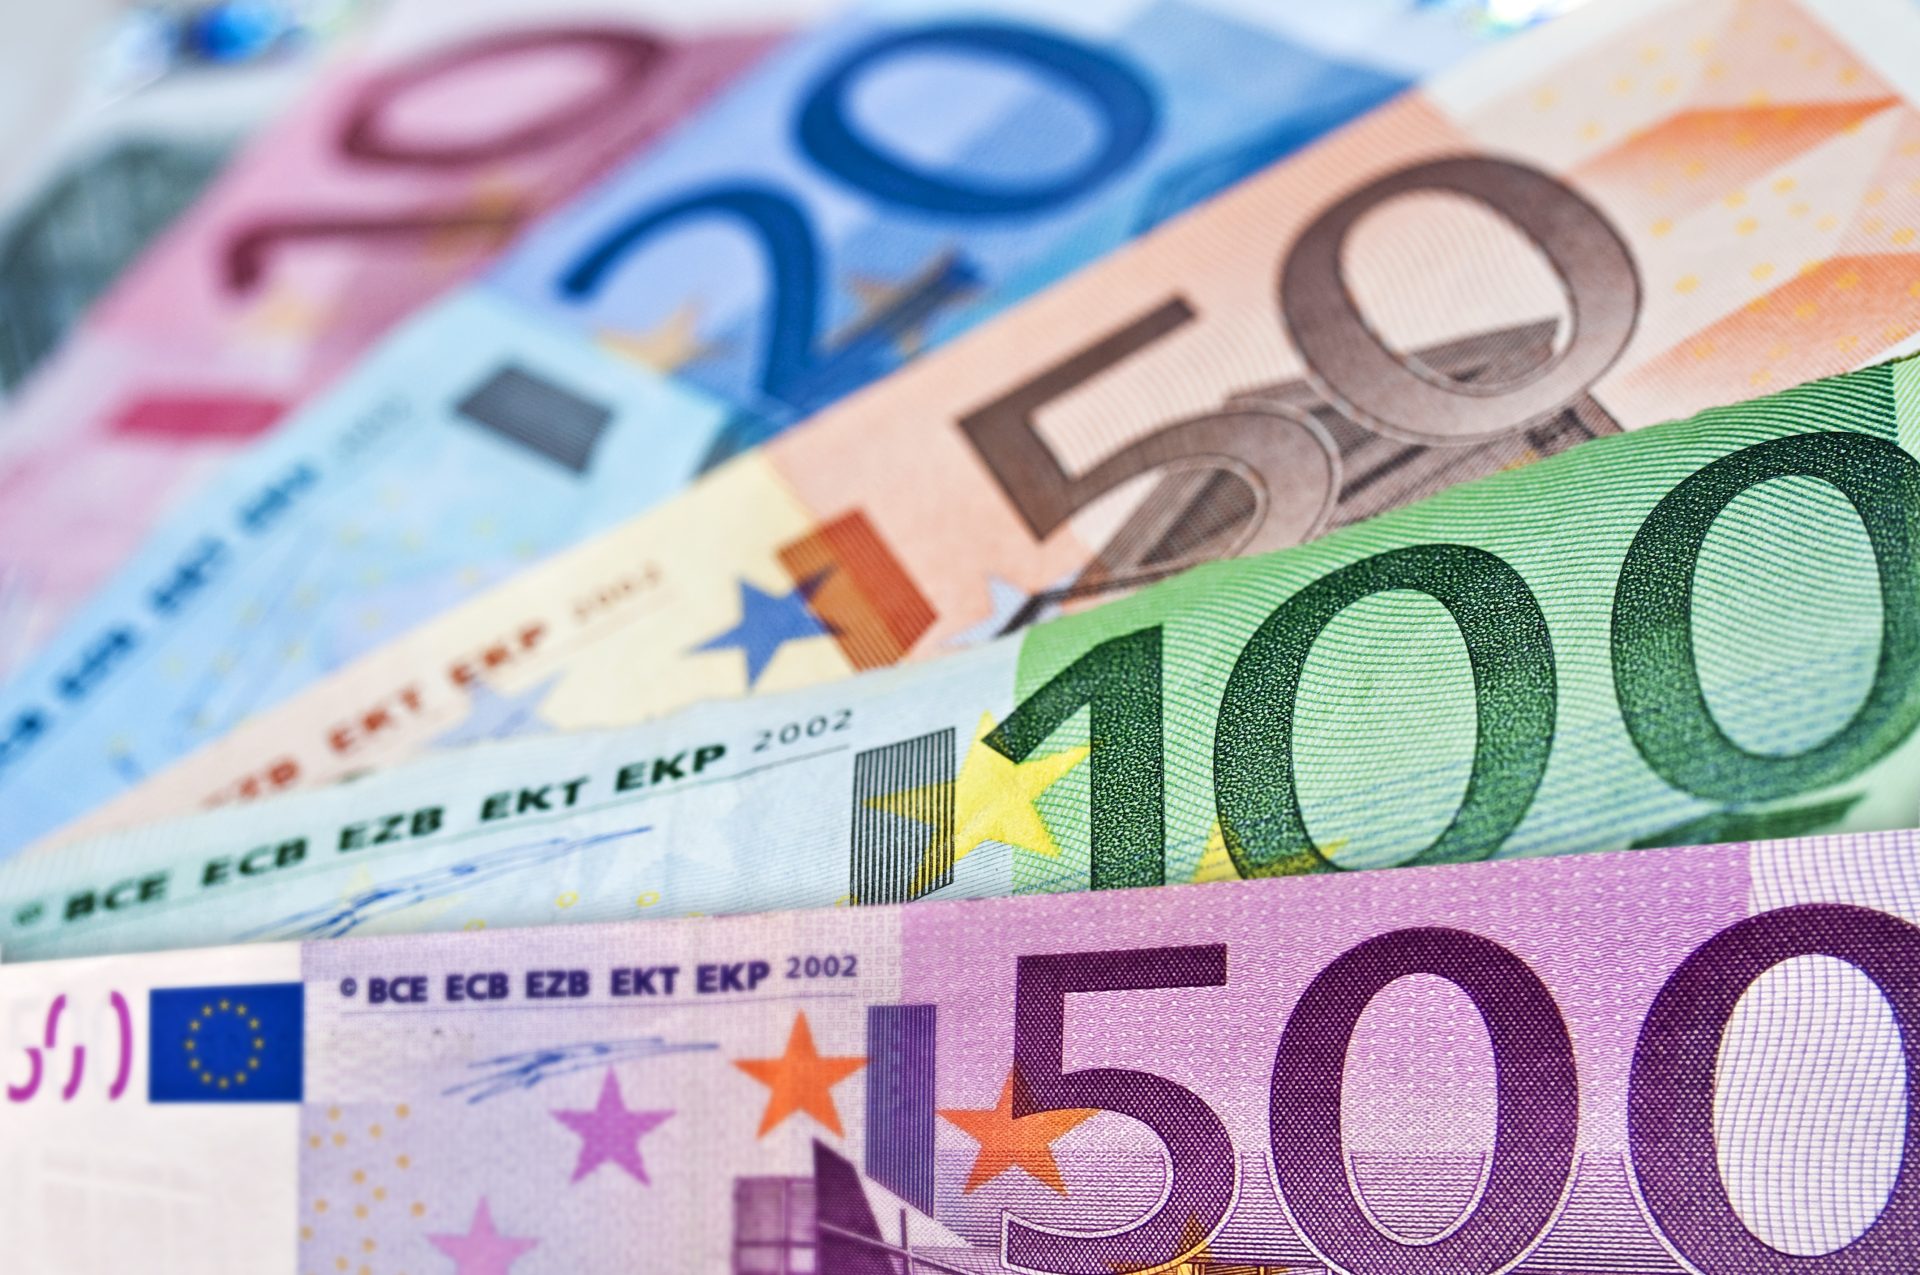 Salário mínimo vai aumentar para 820 euros em 2024